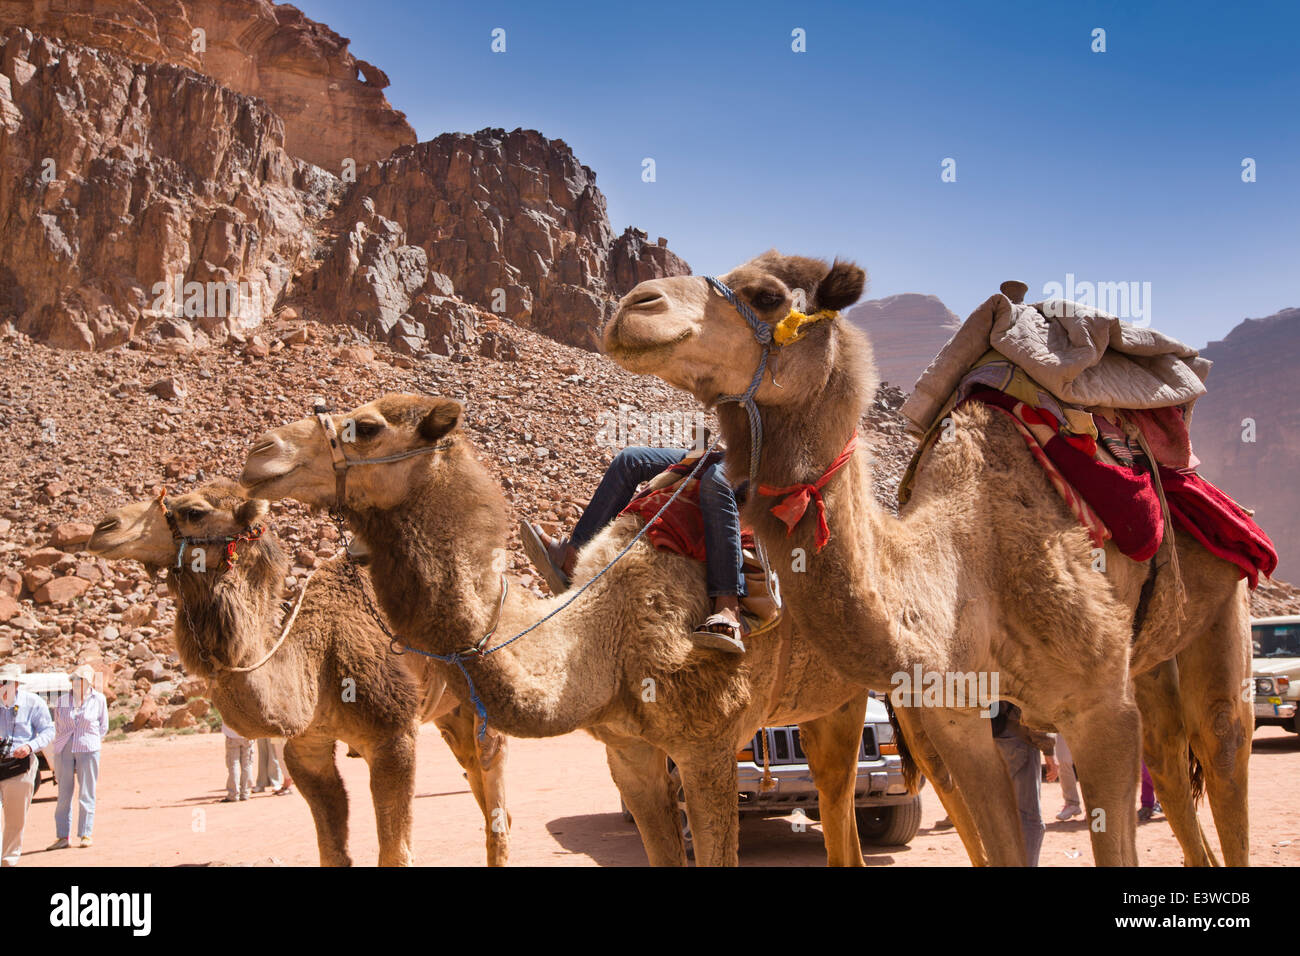 Giordania, Wadi Rum, cammelli in attesa di dare ai turisti la marcia ad acqua dolce primavera nel deserto giordano Foto Stock